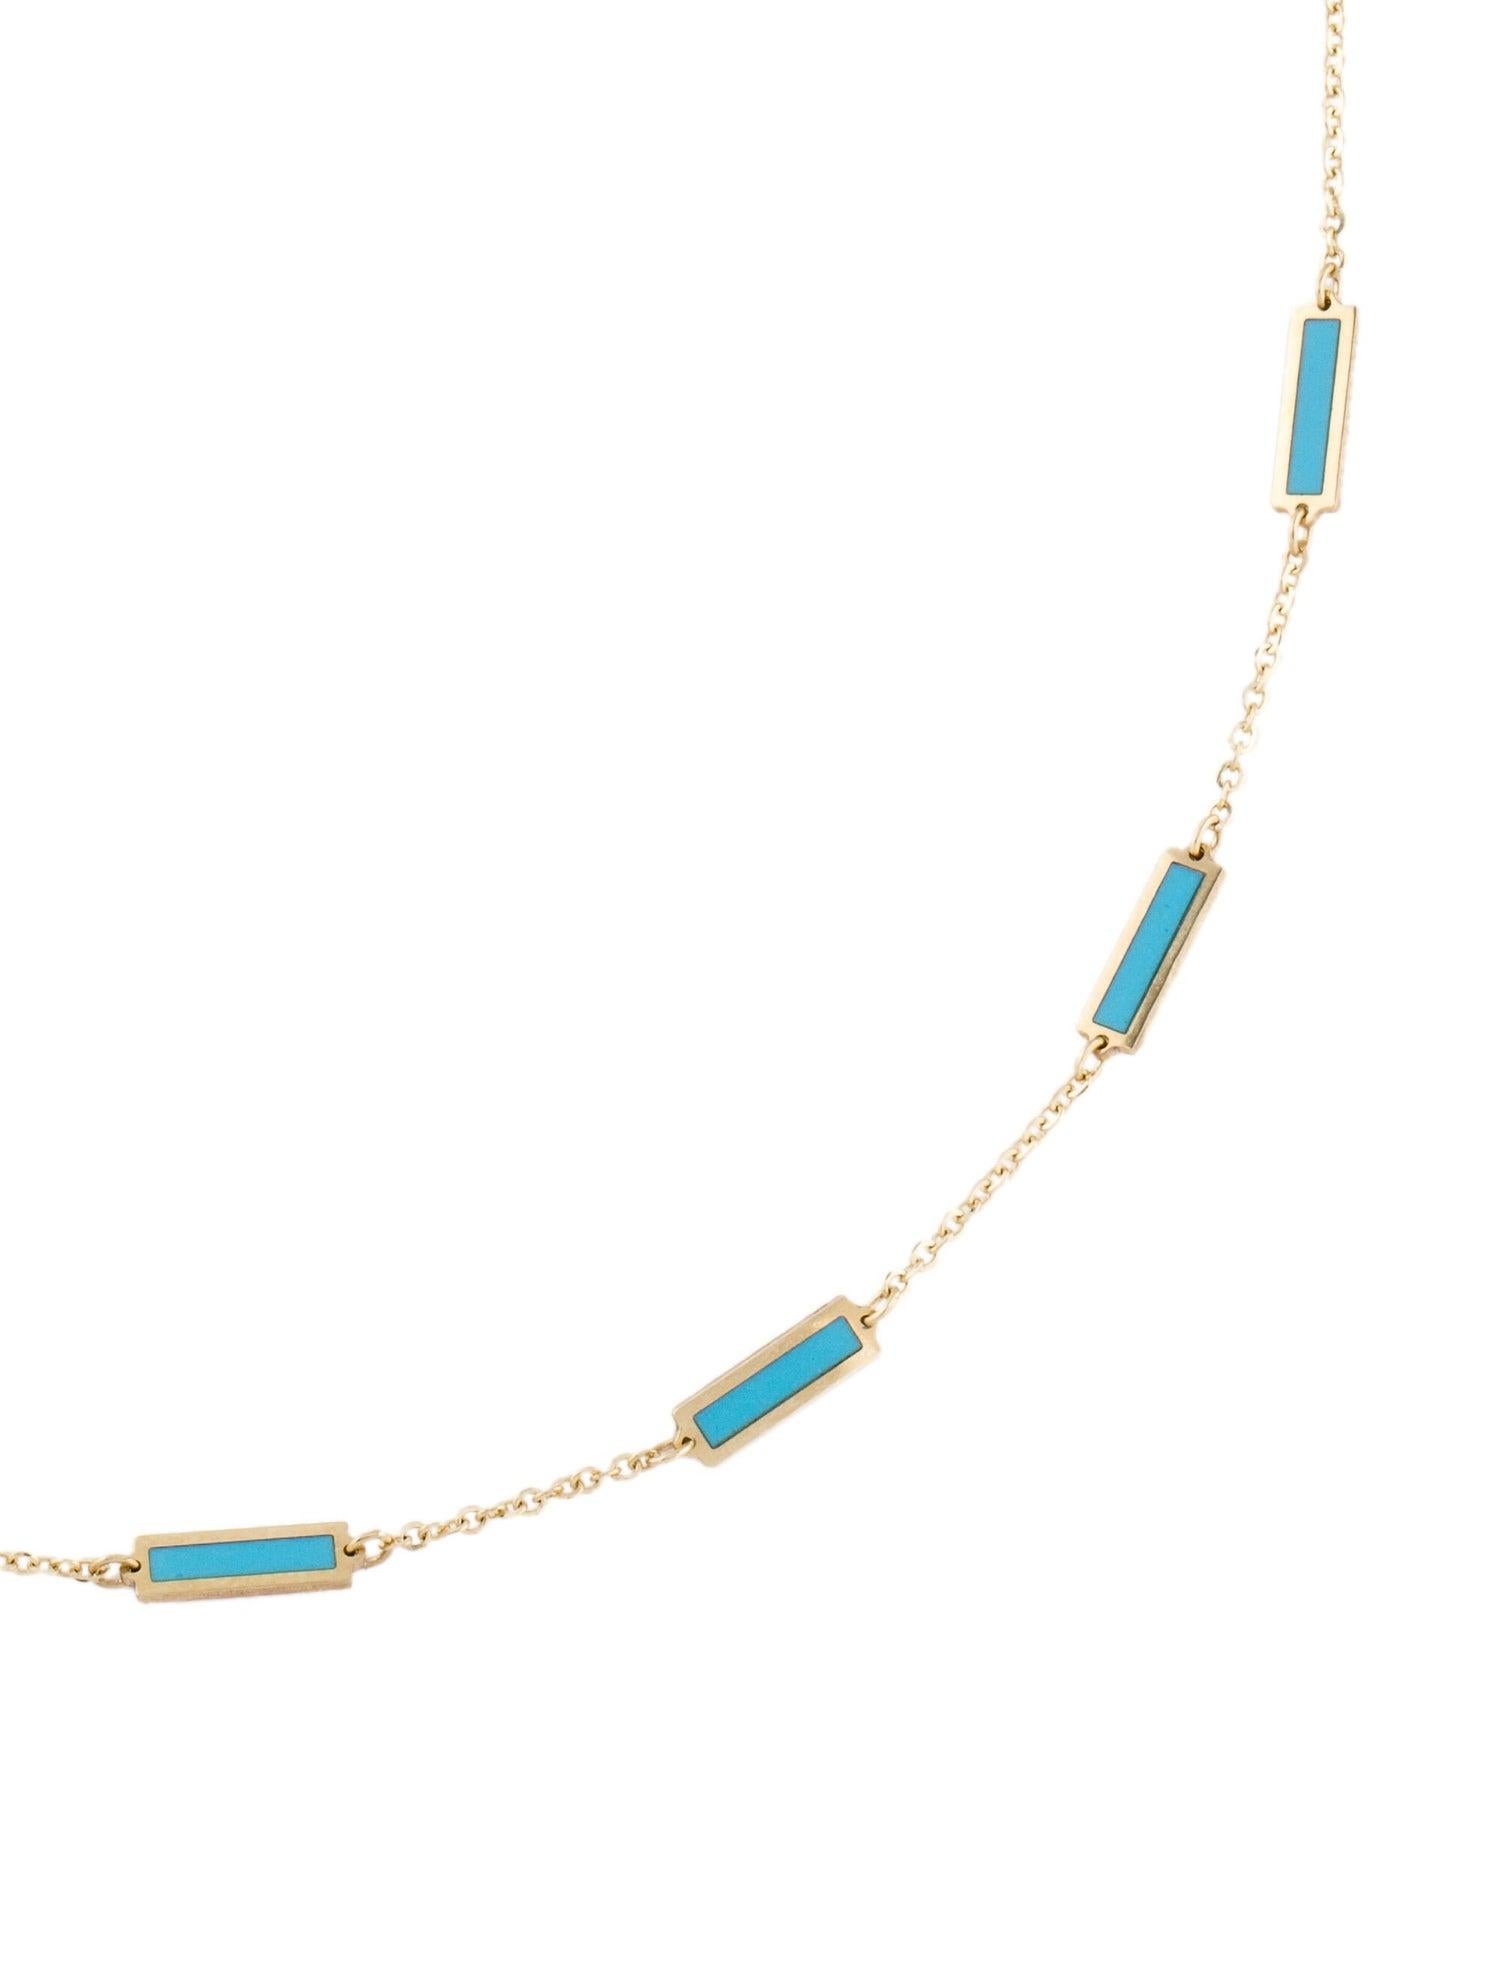 Qualität Edelstein Bar Halskette: Diese wunderschöne Halskette aus 14-karätigem Gelbgold, die sich durch ihr Design und ihre Details auszeichnet, ist mit farbigen Edelsteinen besetzt. Halskette Messung ist 18